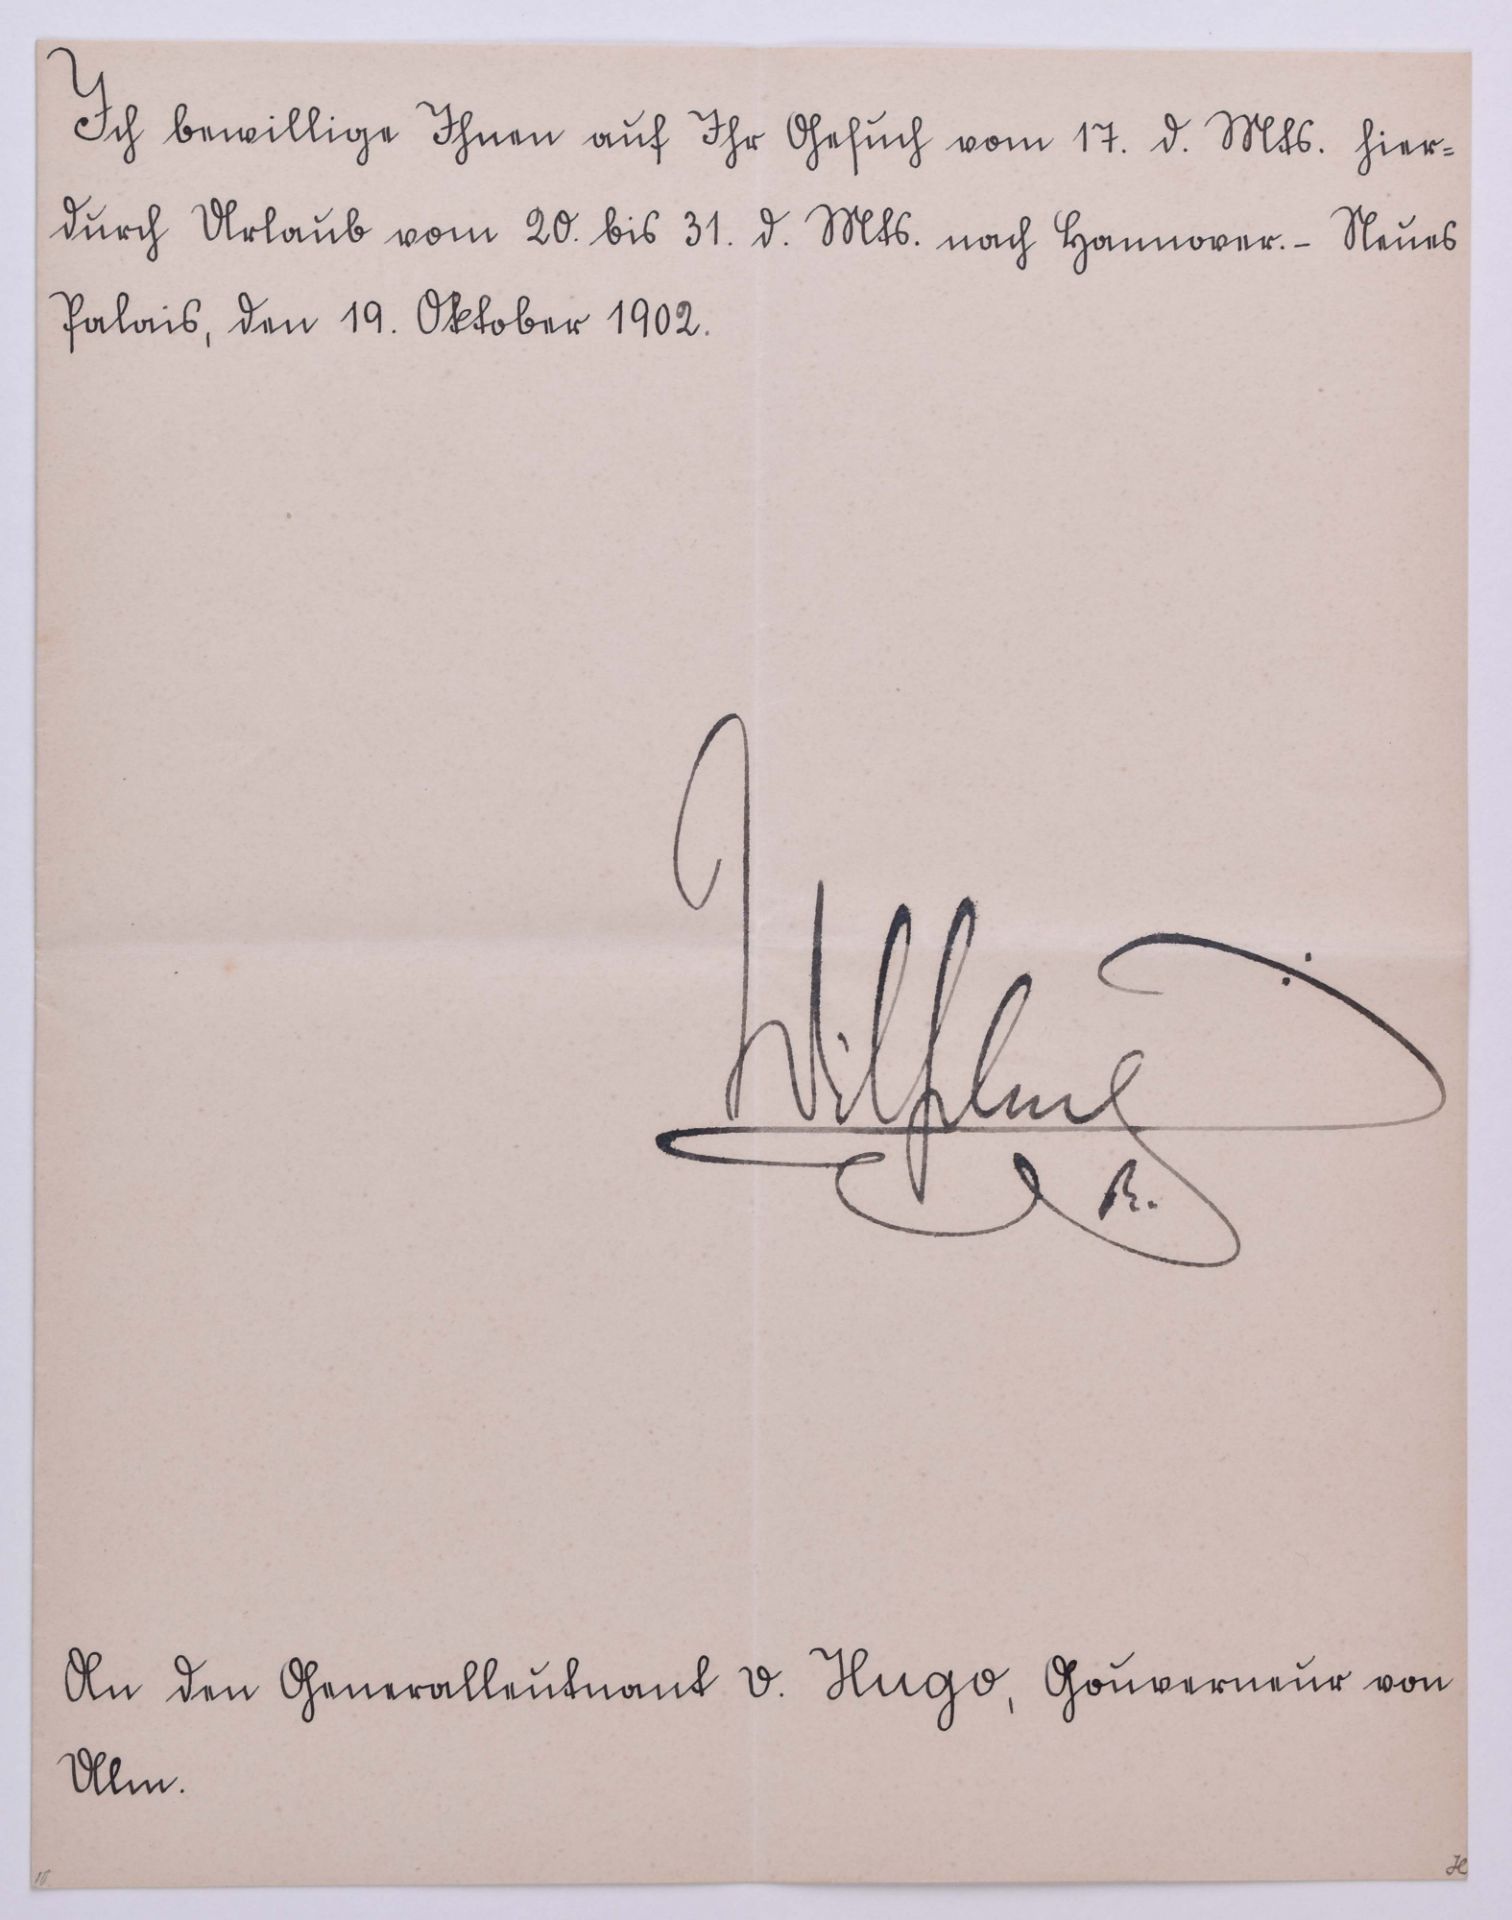 Urlaubsbewilligung vom 19.10.1902Urlaubsbewilligung für Generalleutnant Carl-Georg von Hugo, mit